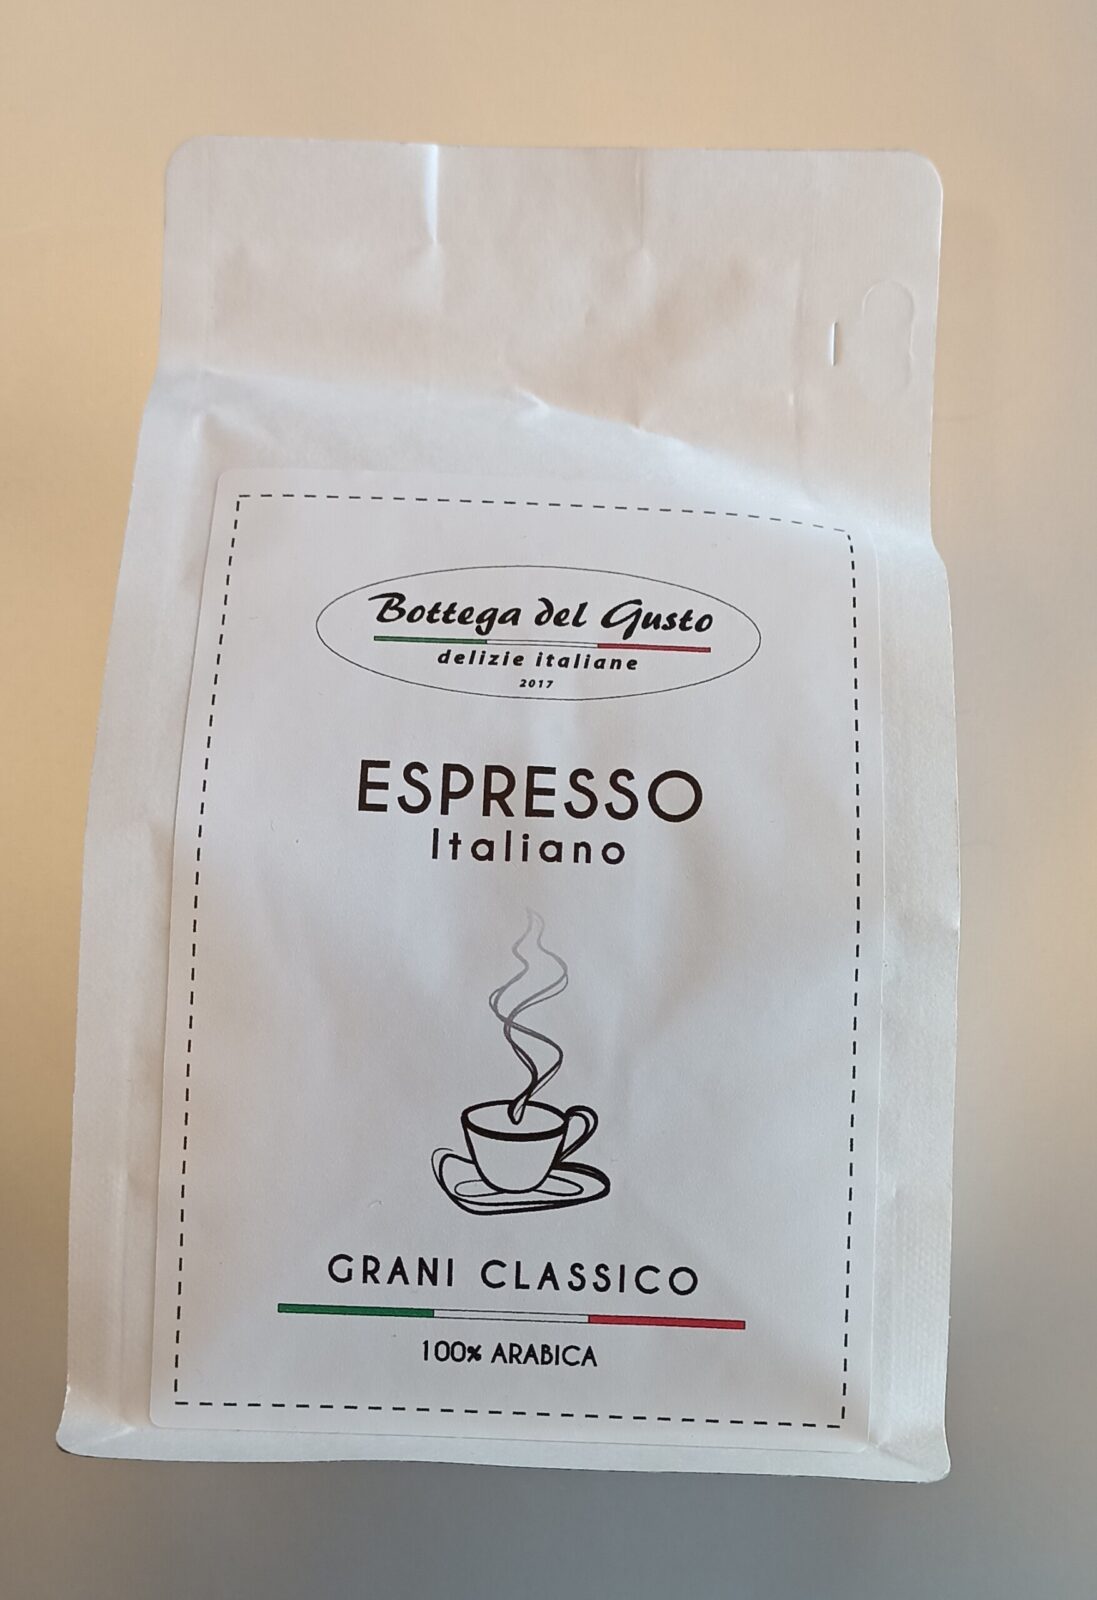 Classico Espresso Italiano Bottega del gusto 250G